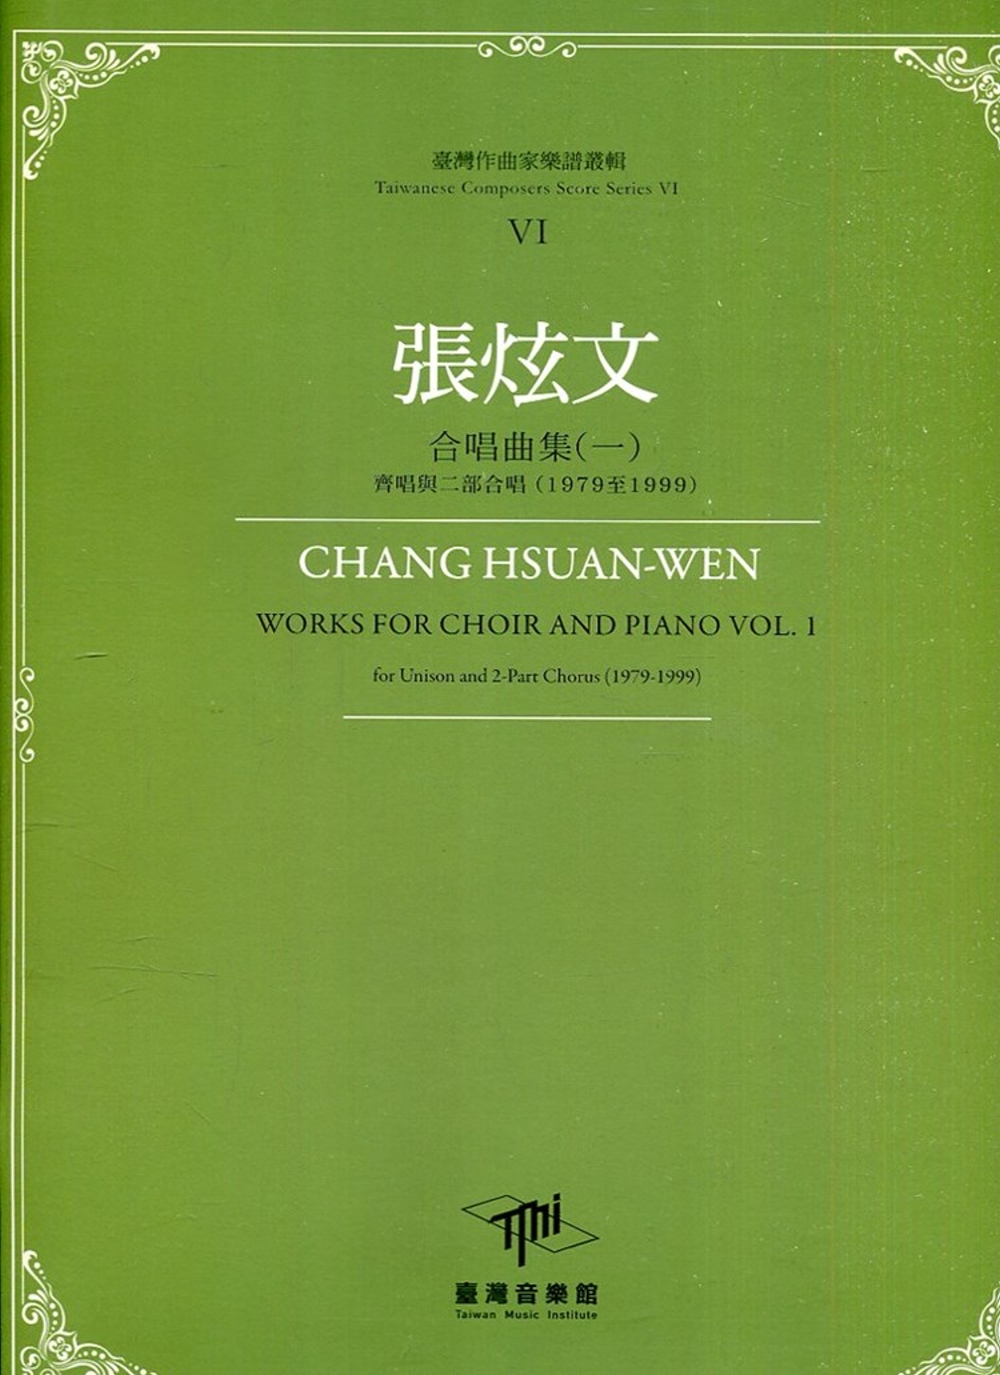 臺灣作曲家樂譜叢輯VI：張炫文合唱曲集(一) 齊唱與二部合唱(1979至1999)